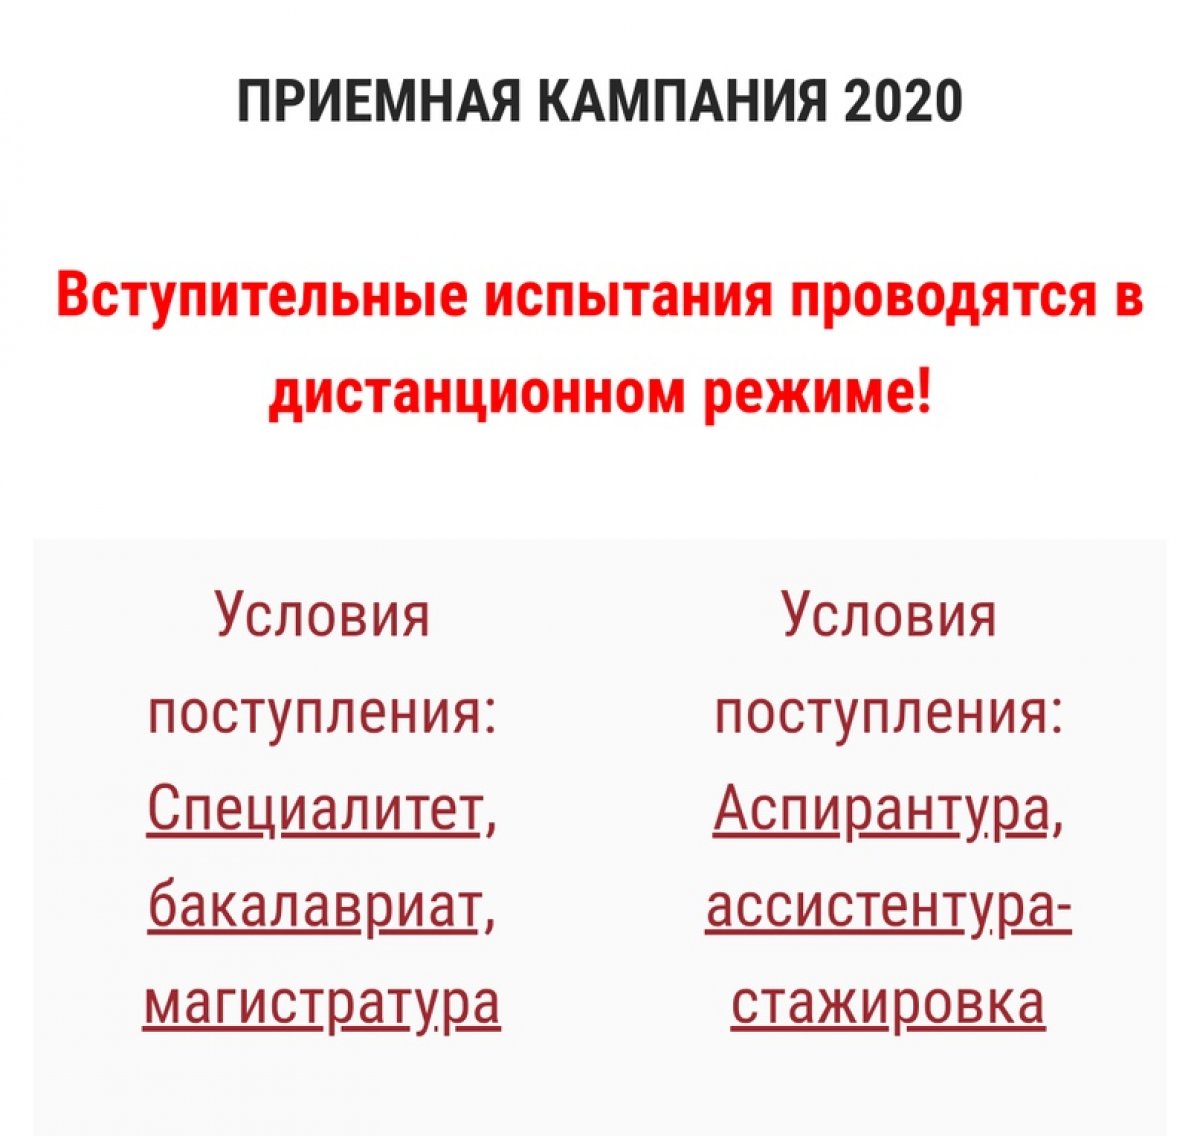 ПРИЕМНАЯ КАМПАНИЯ 2020